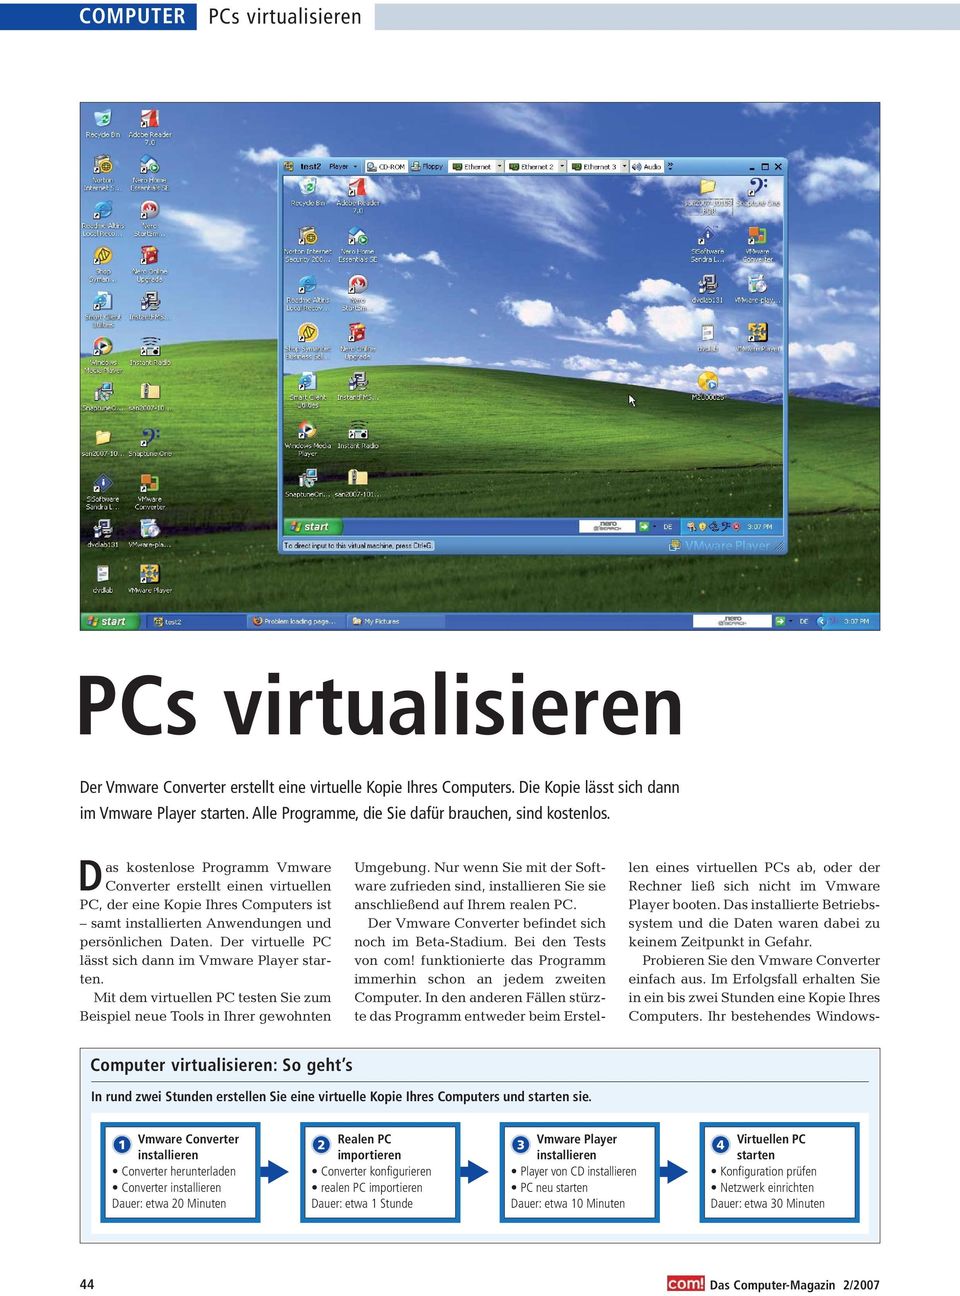 Der virtuelle PC lässt sich dann im Vmware Player starten. Mit dem virtuellen PC testen Sie zum Beispiel neue Tools in Ihrer gewohnten Umgebung.